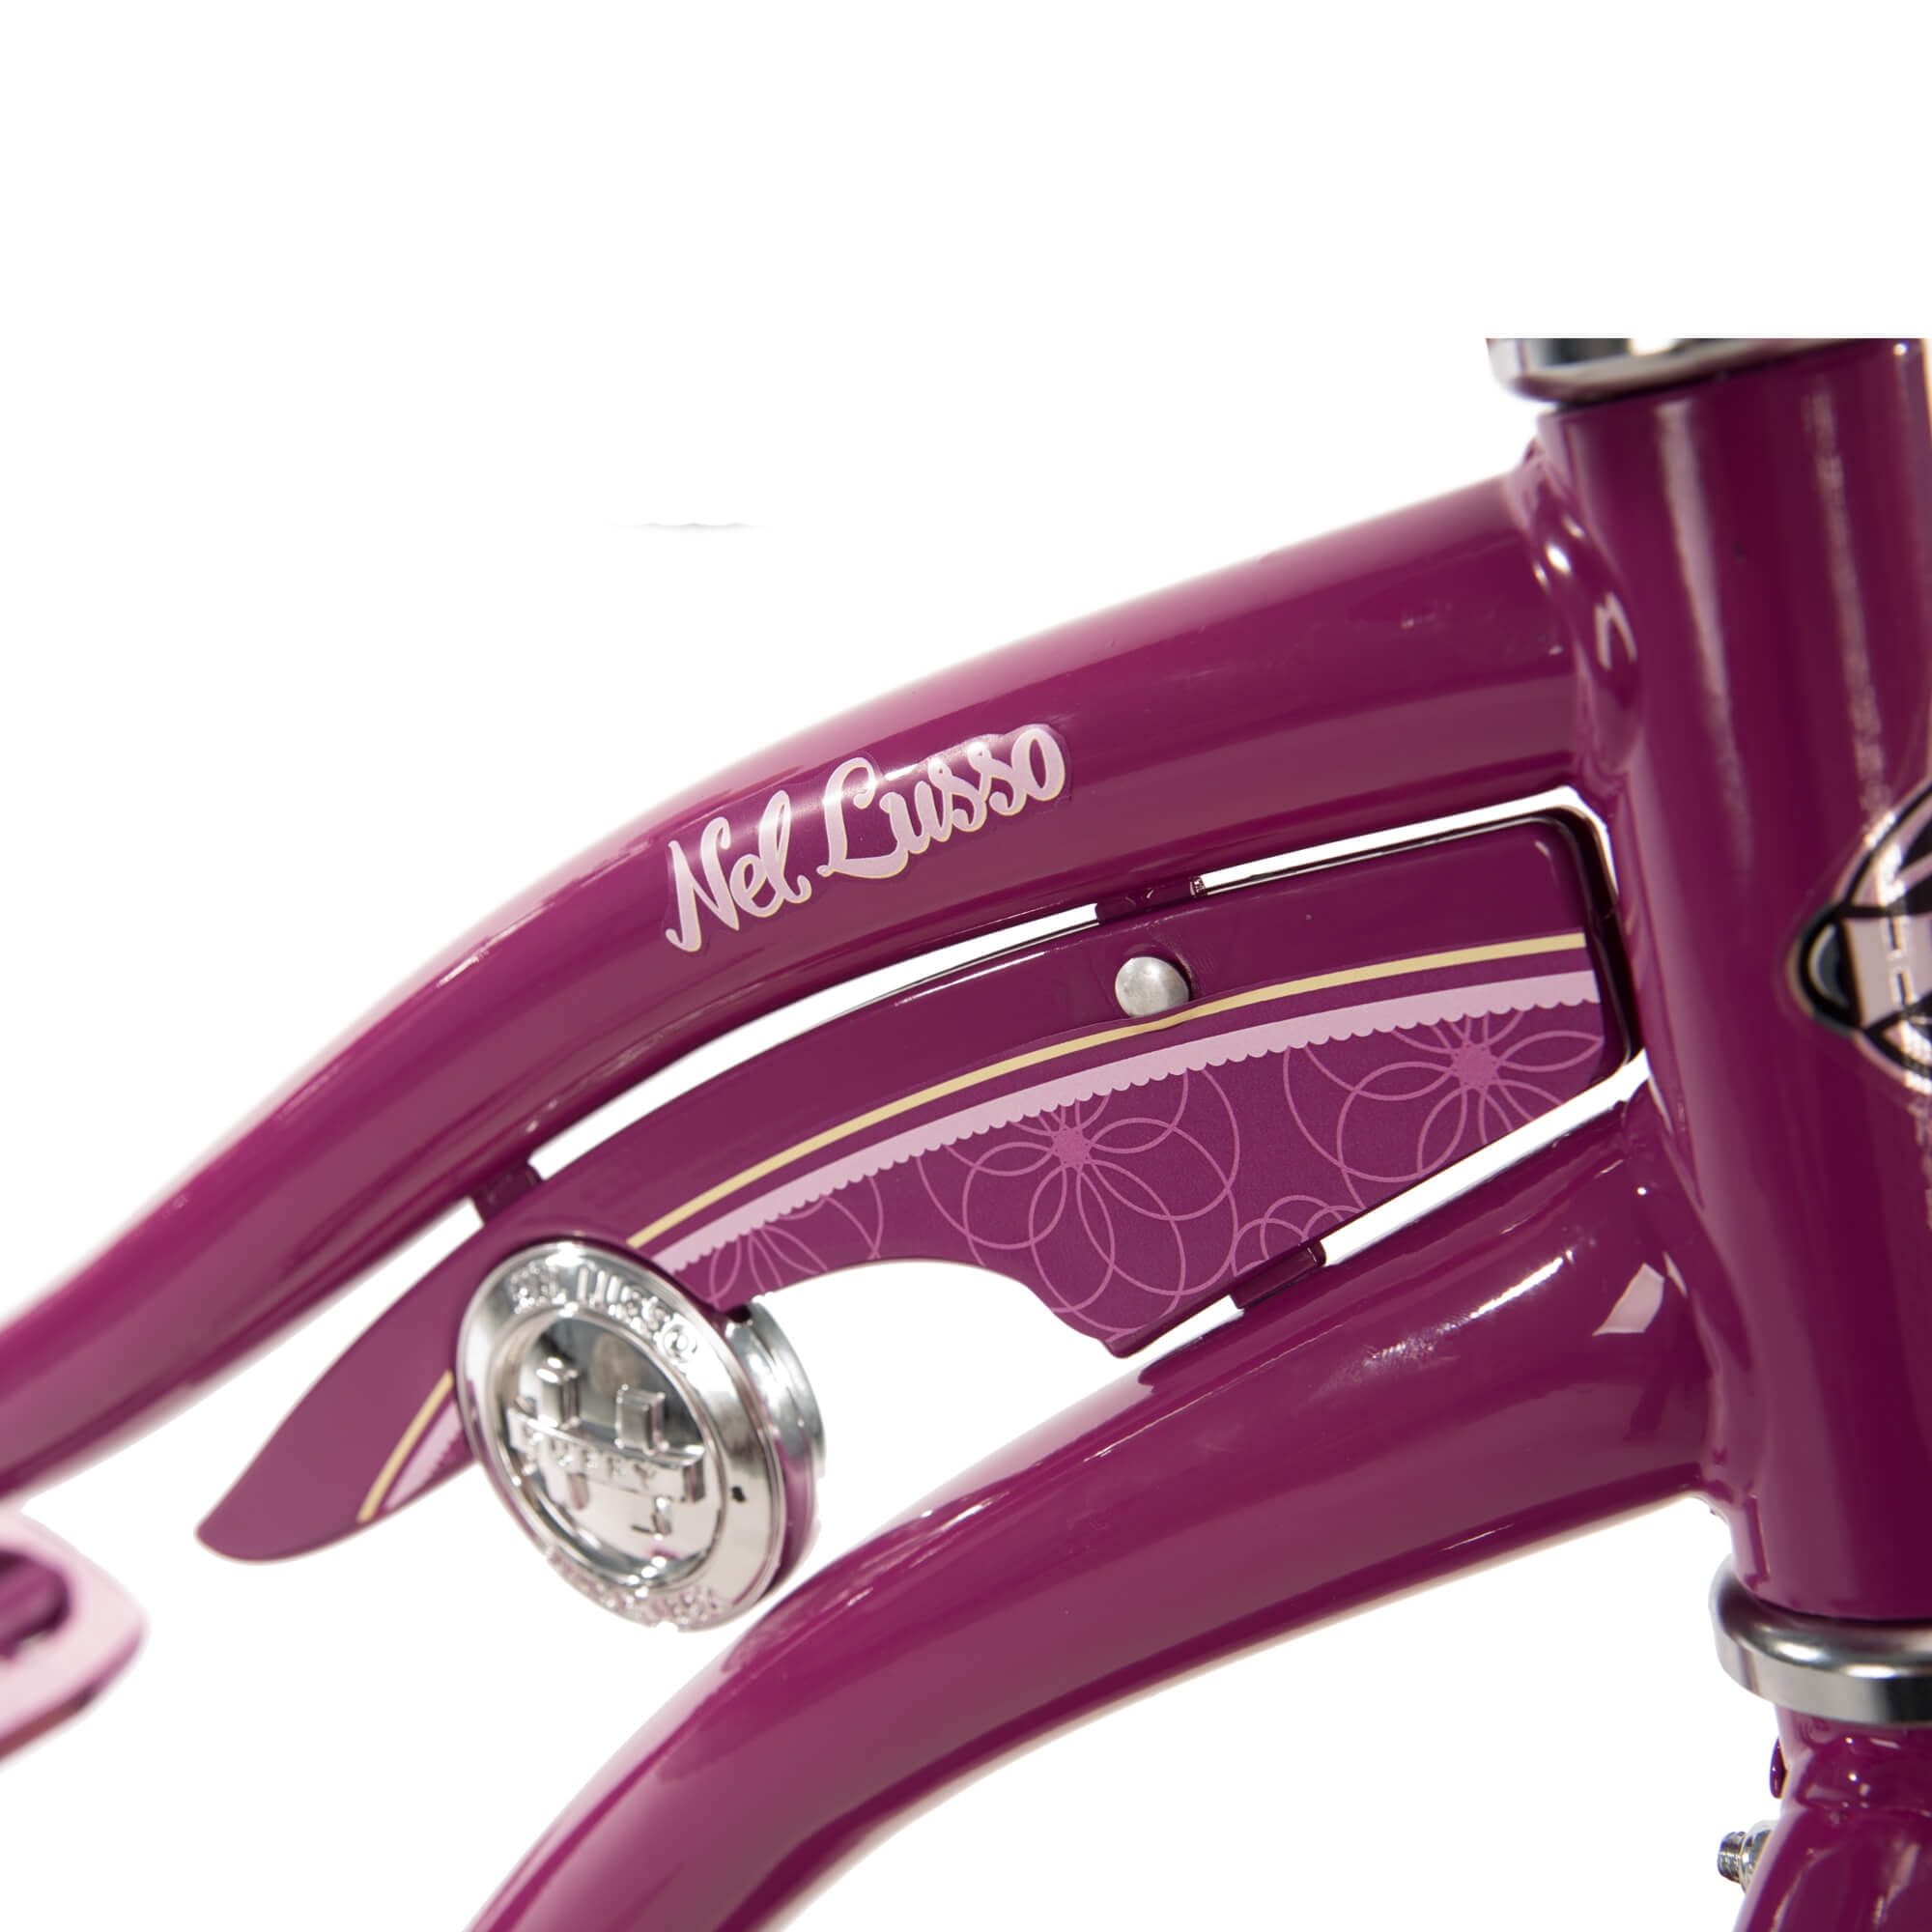 Ladies Undies - Purple Bikes – Poison Pear